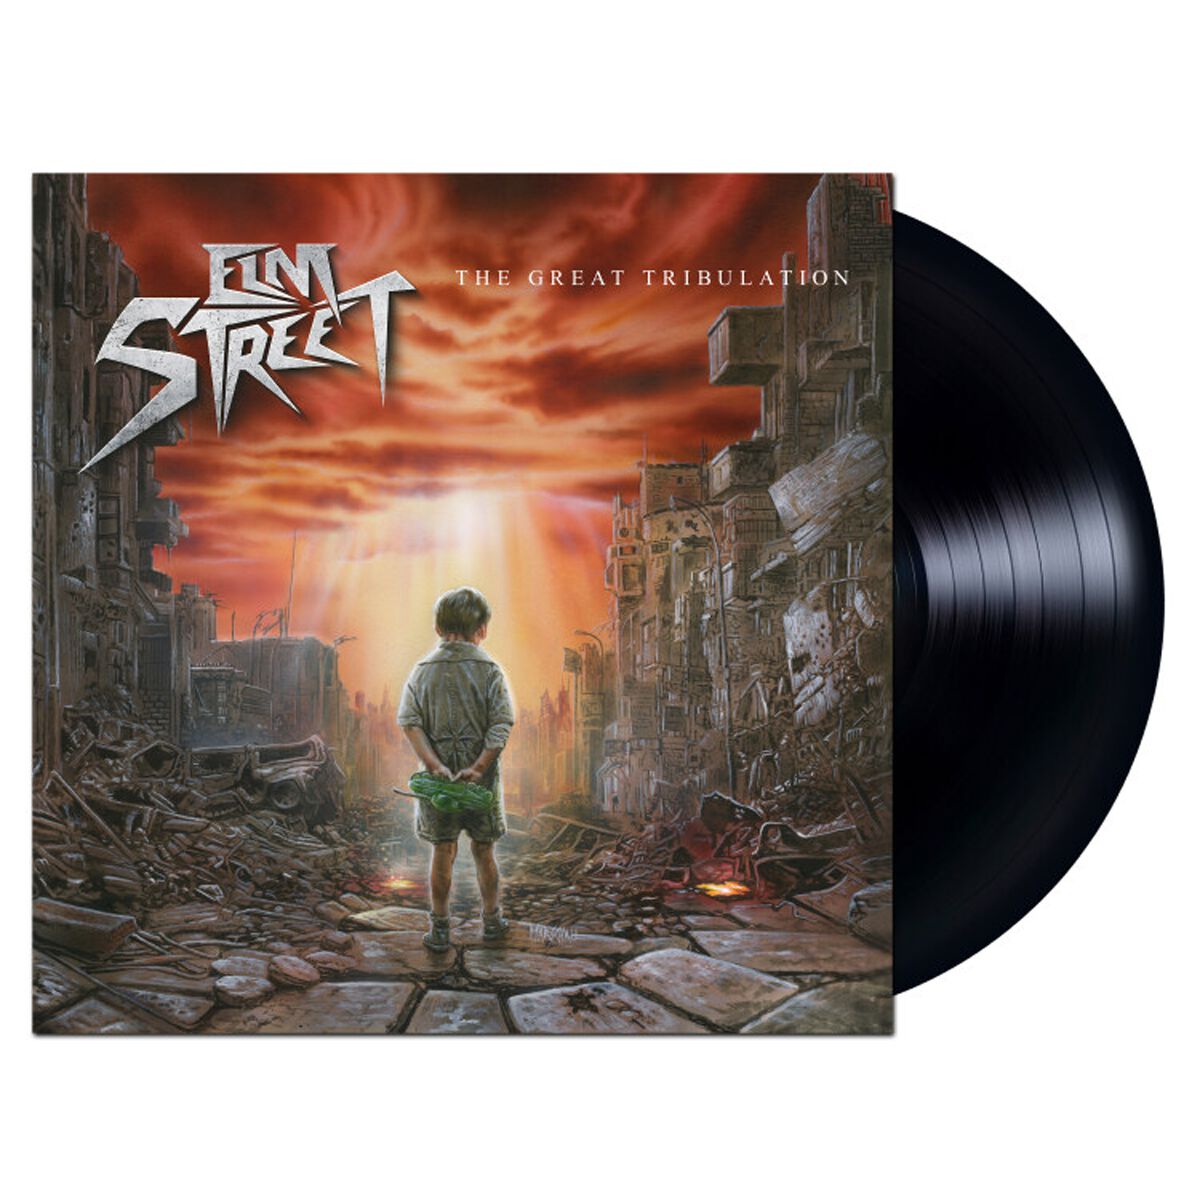 The great tribulation von Elm Street - LP (Limited Edition, Standard)